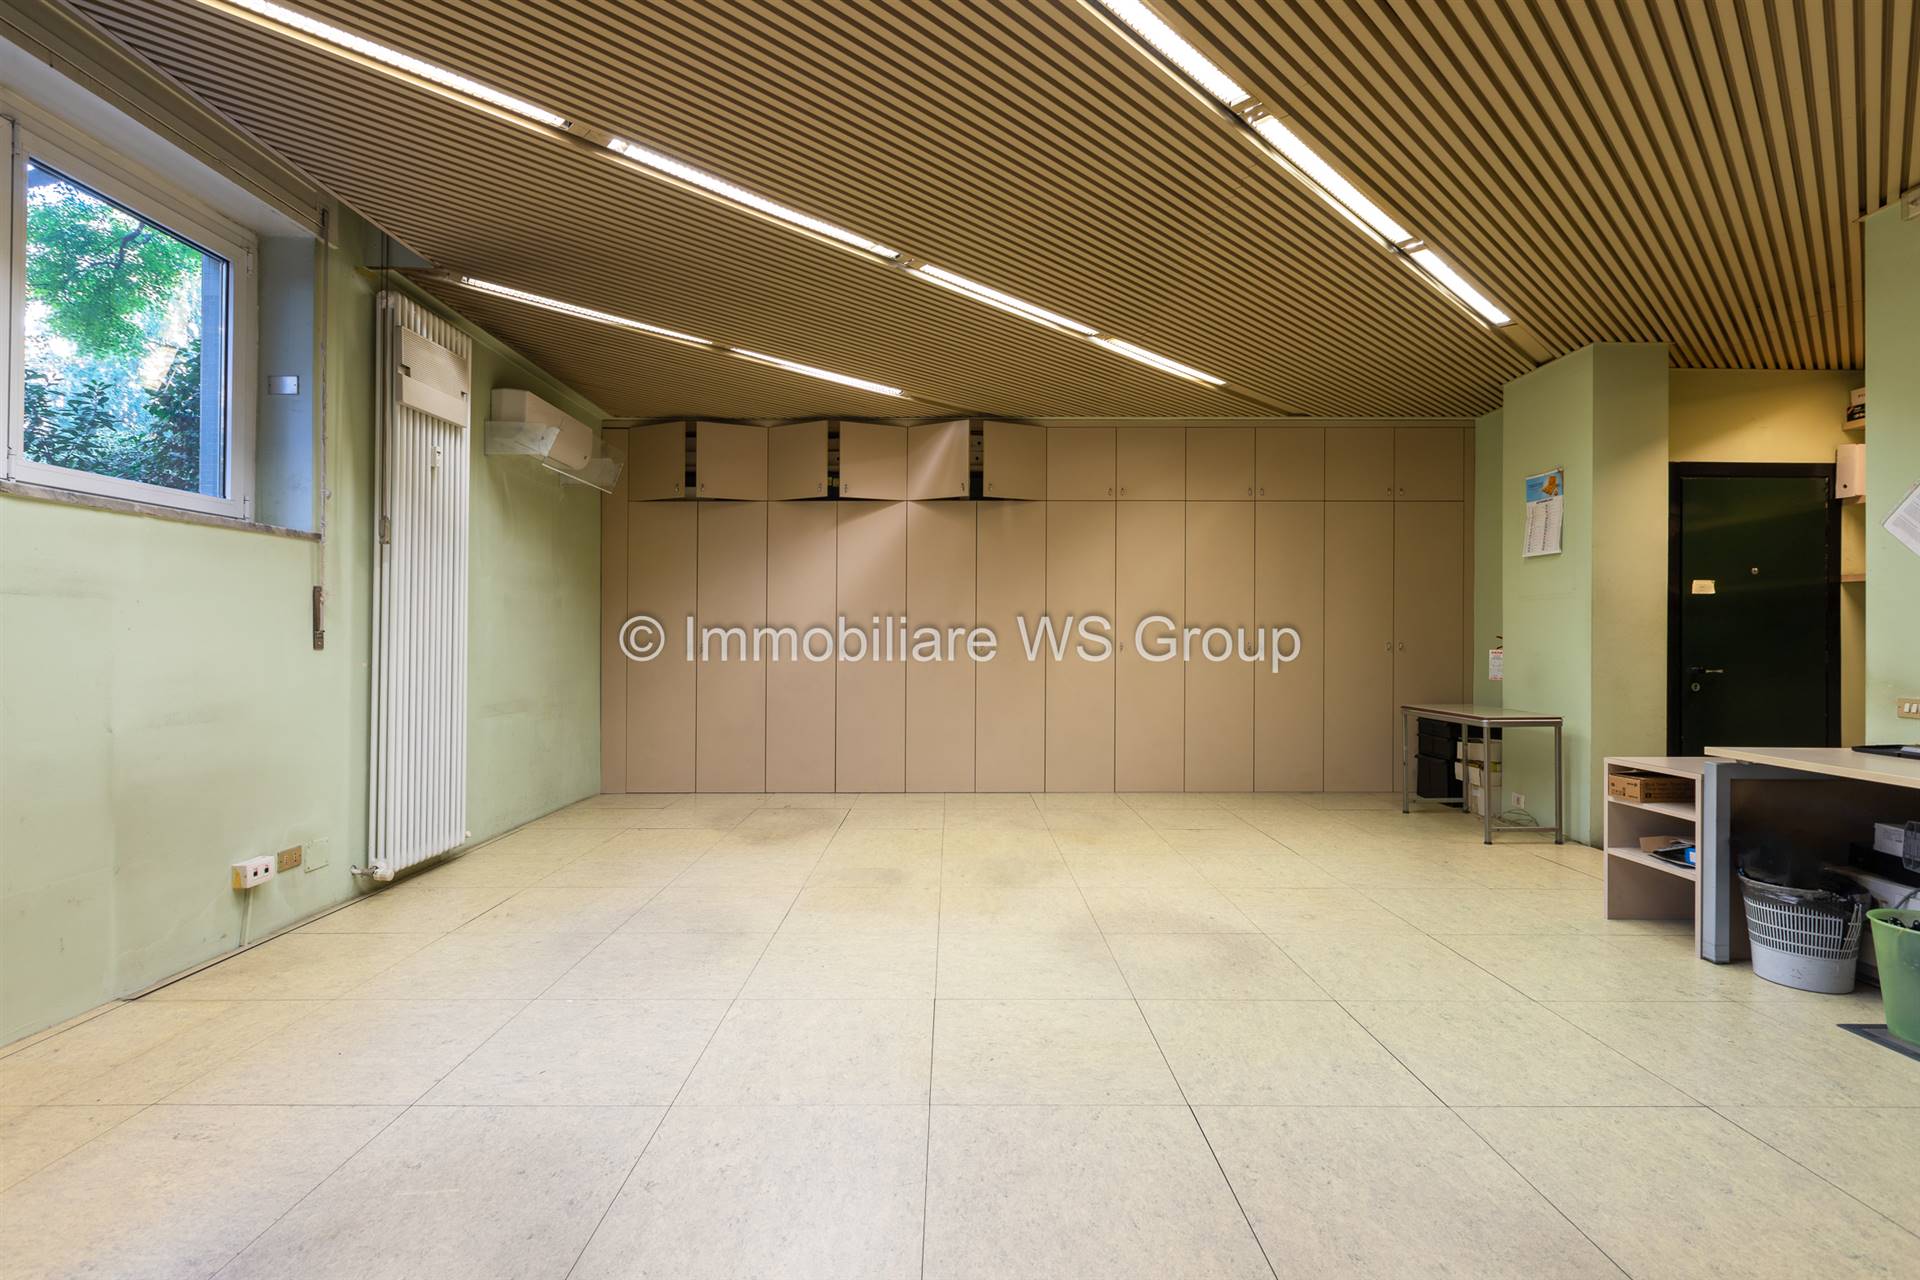 Ufficio / Studio in vendita a Monza, 1 locali, zona Zona: 7 . San Biagio, Cazzaniga, prezzo € 120.000 | CambioCasa.it